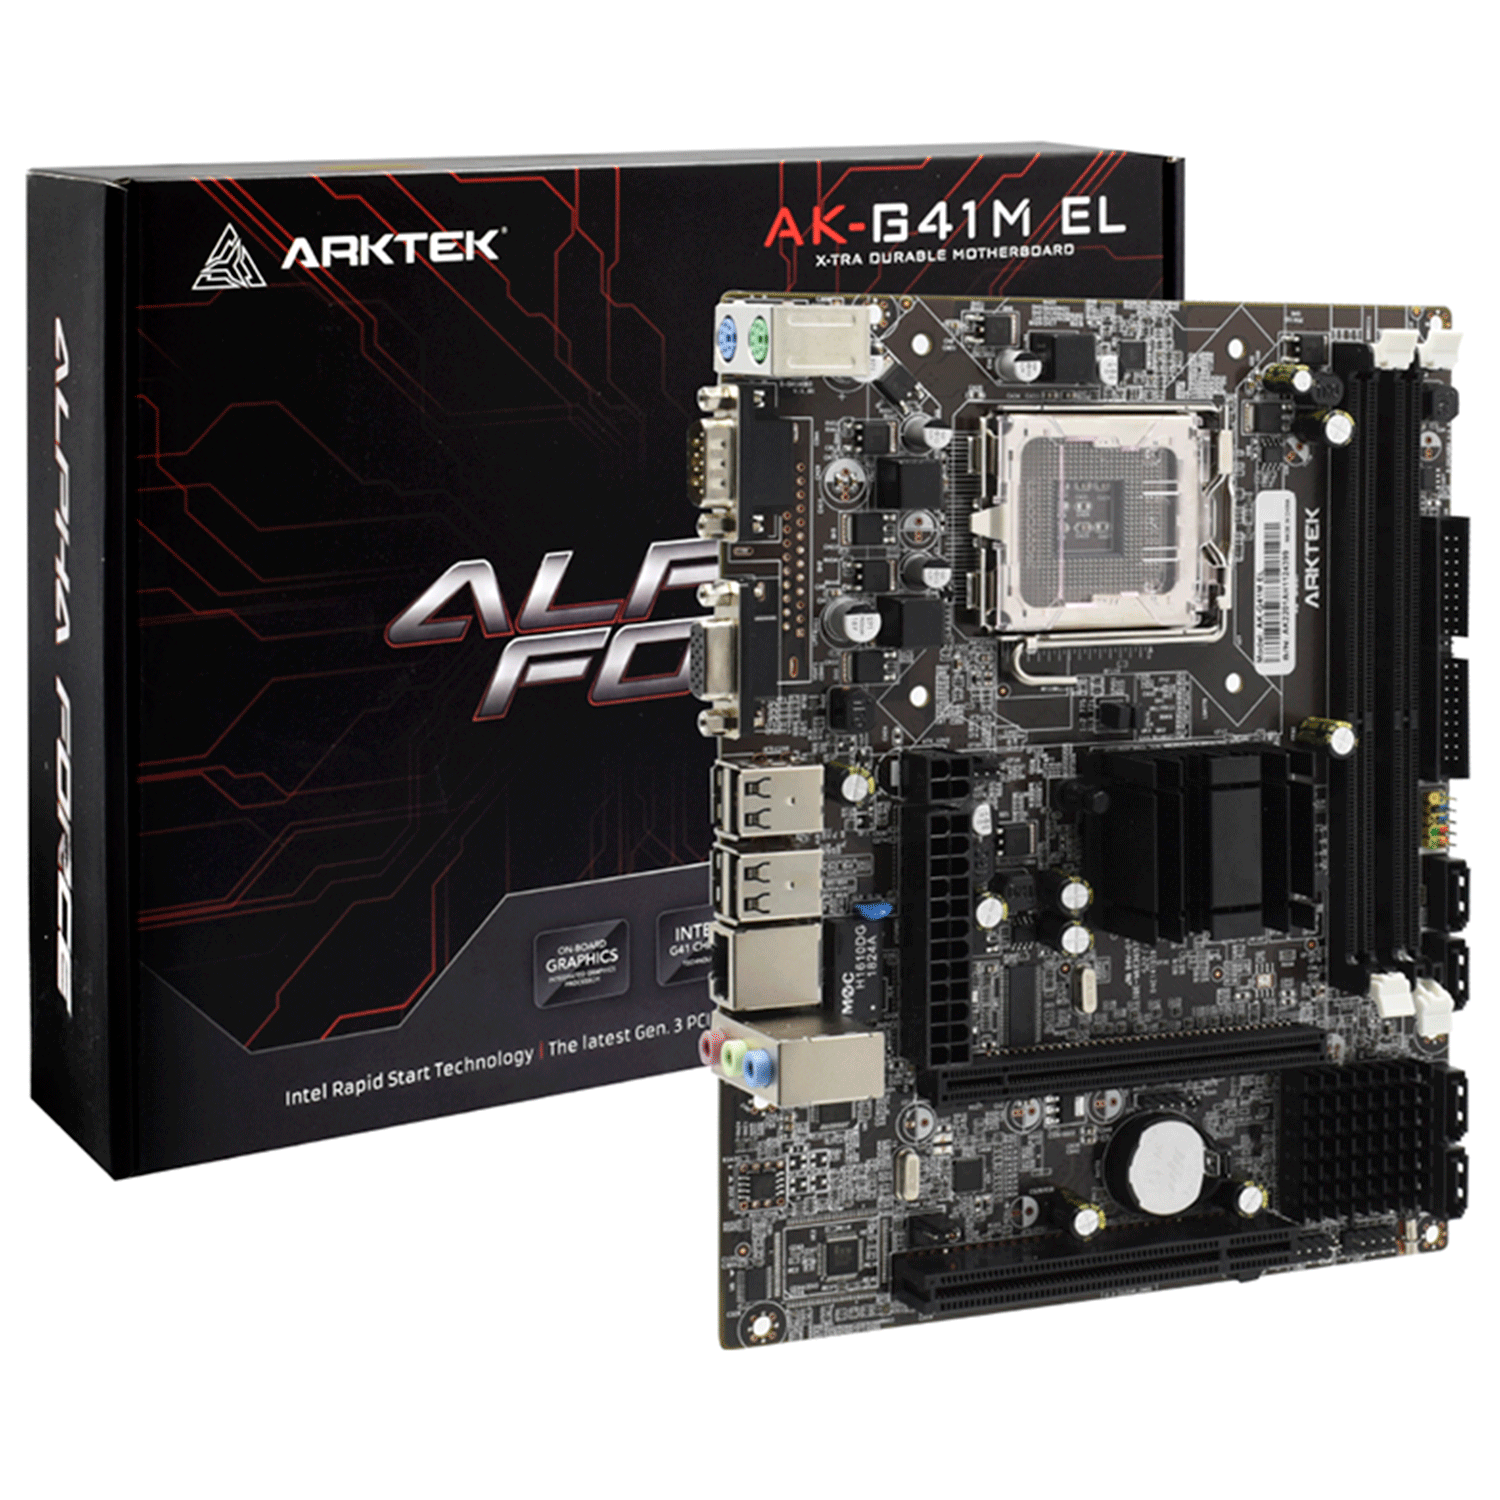 Placa Mãe Arktek AK-G41M EL DDR3 Socket LGA 775 Chipset Intel G41 Micro ATX 
